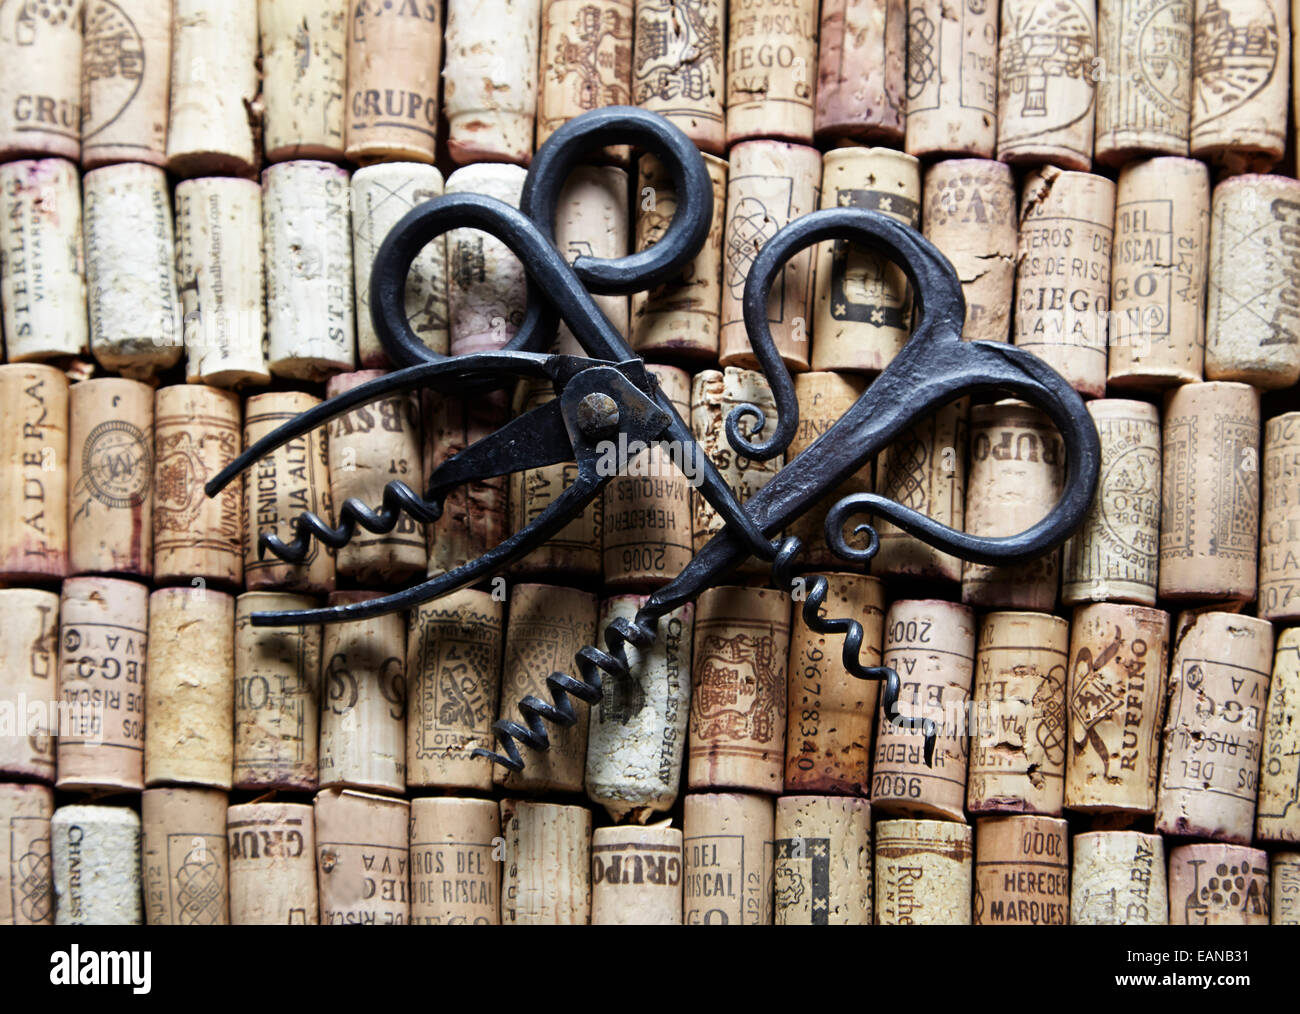 Vin antique 3 ouvreurs sur lit de wine corks Banque D'Images